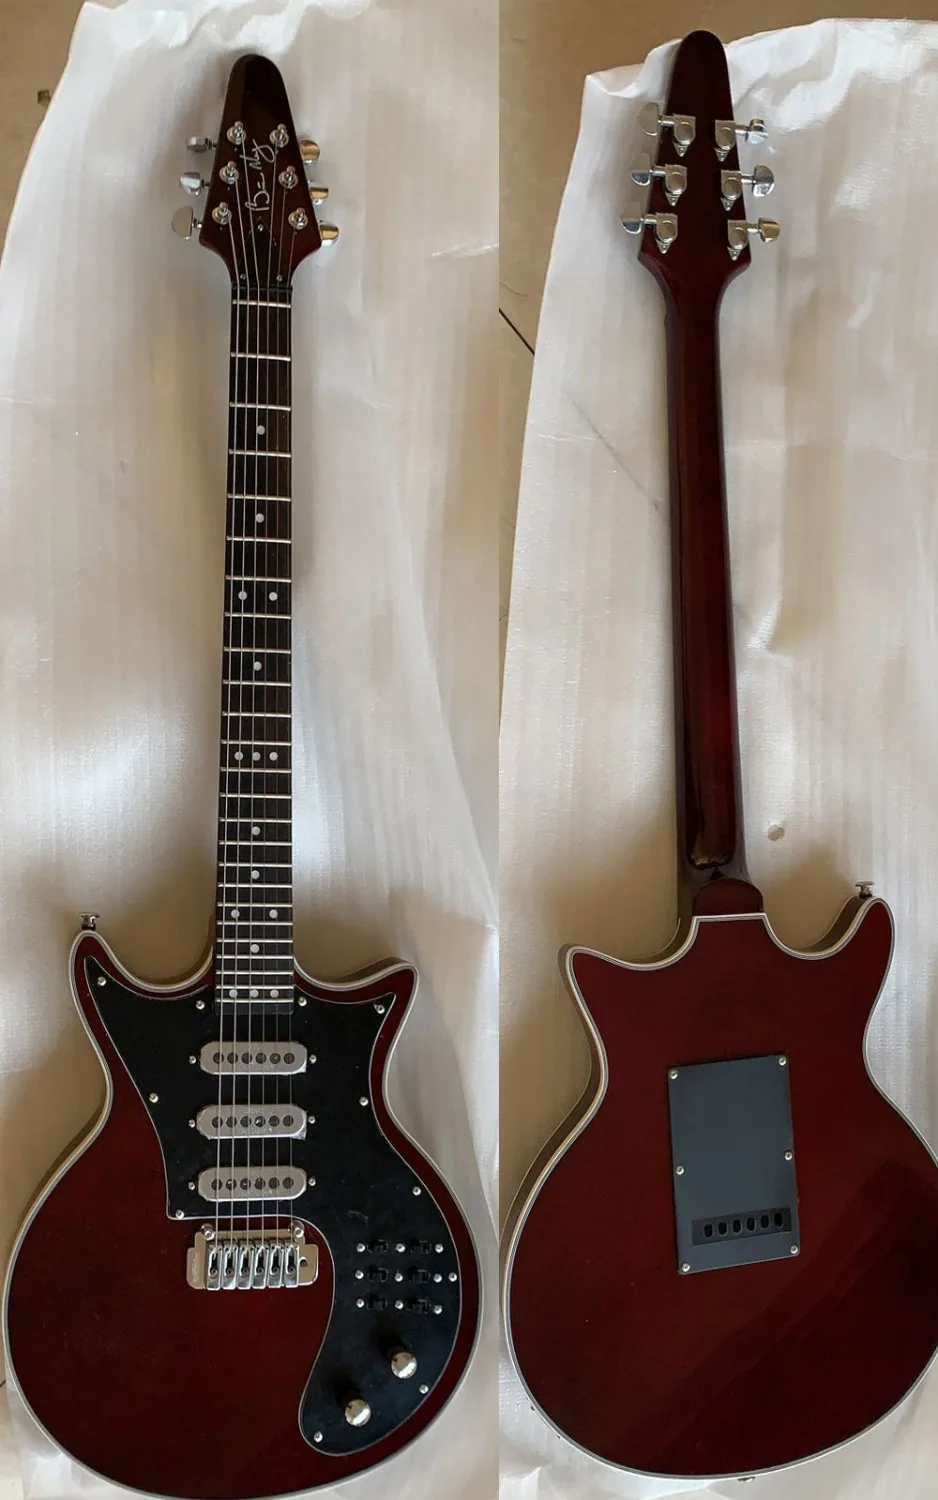 Китайская Гитара s BM01 Brian May винно-красная электрогитара 24 лада черная накладка 3 звукоснимателя тремоло мост